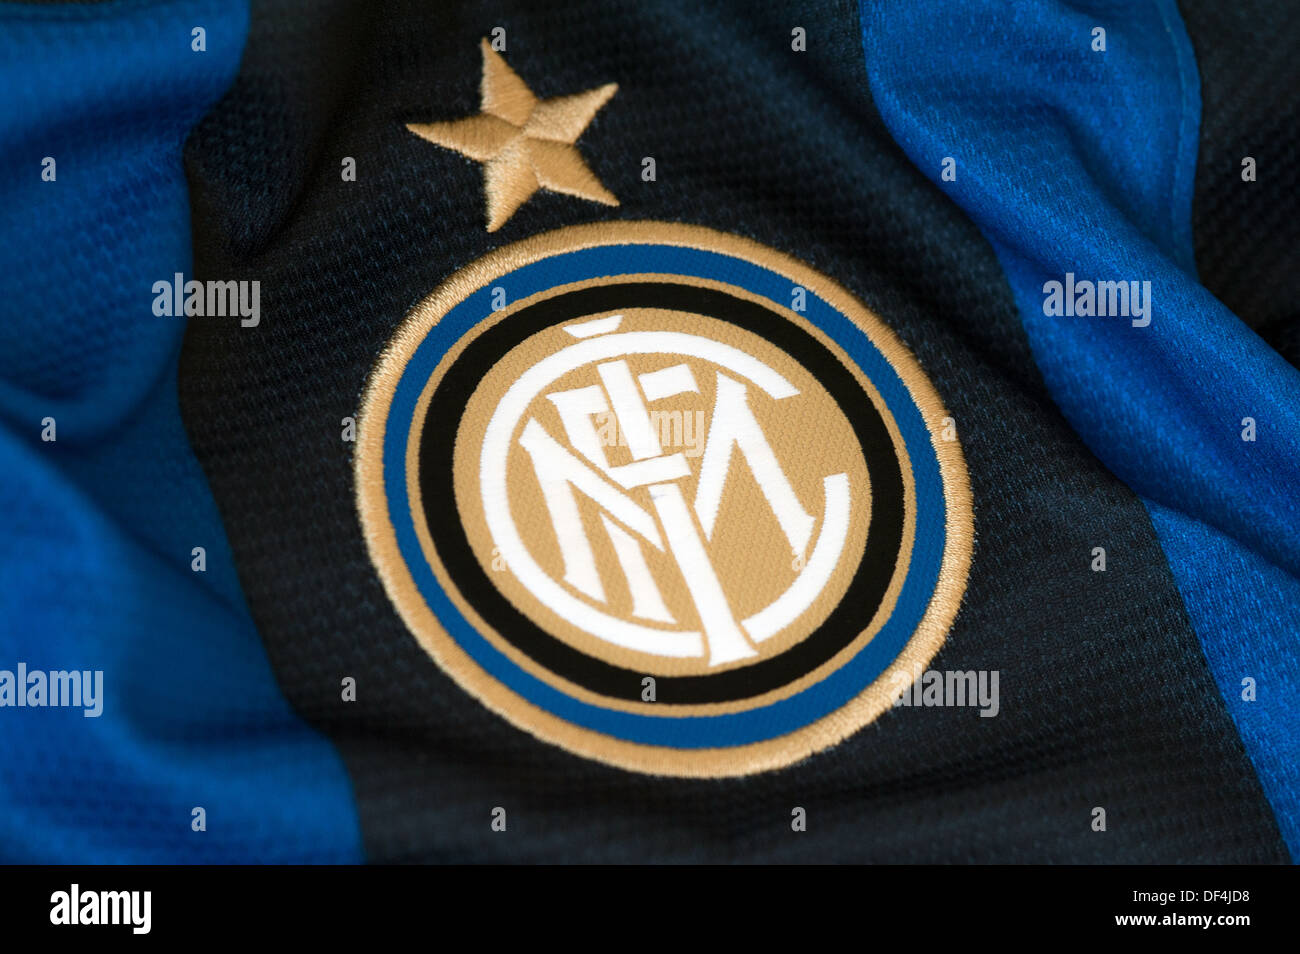 F.C. Internazionale Milano Stock Photo